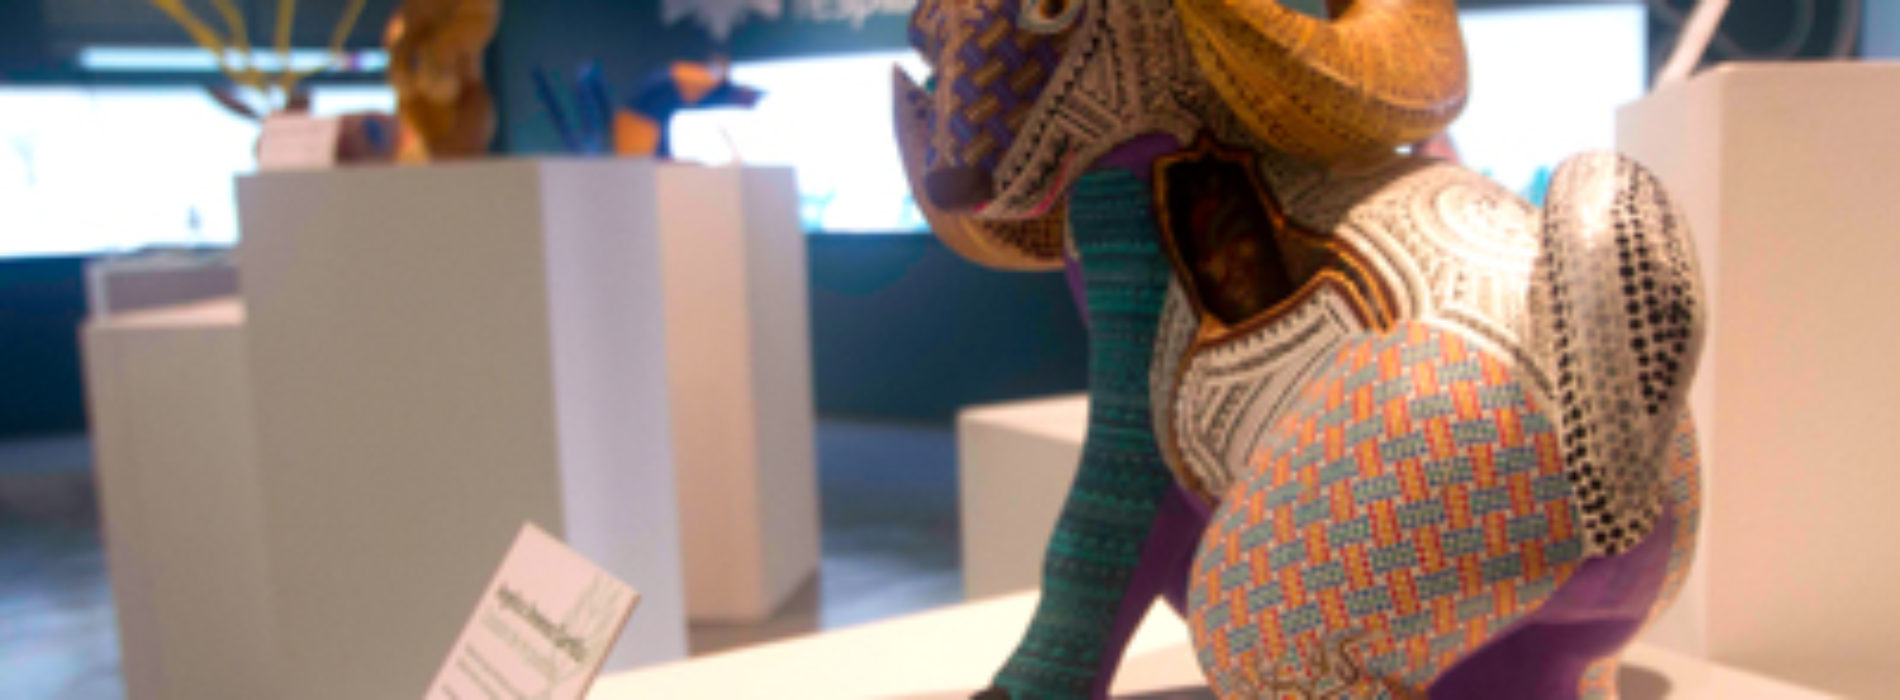 Cautiva Exposición Artesanal “Manos y Alma de Oaxaca” a cientos de visitantes de México y el mundo